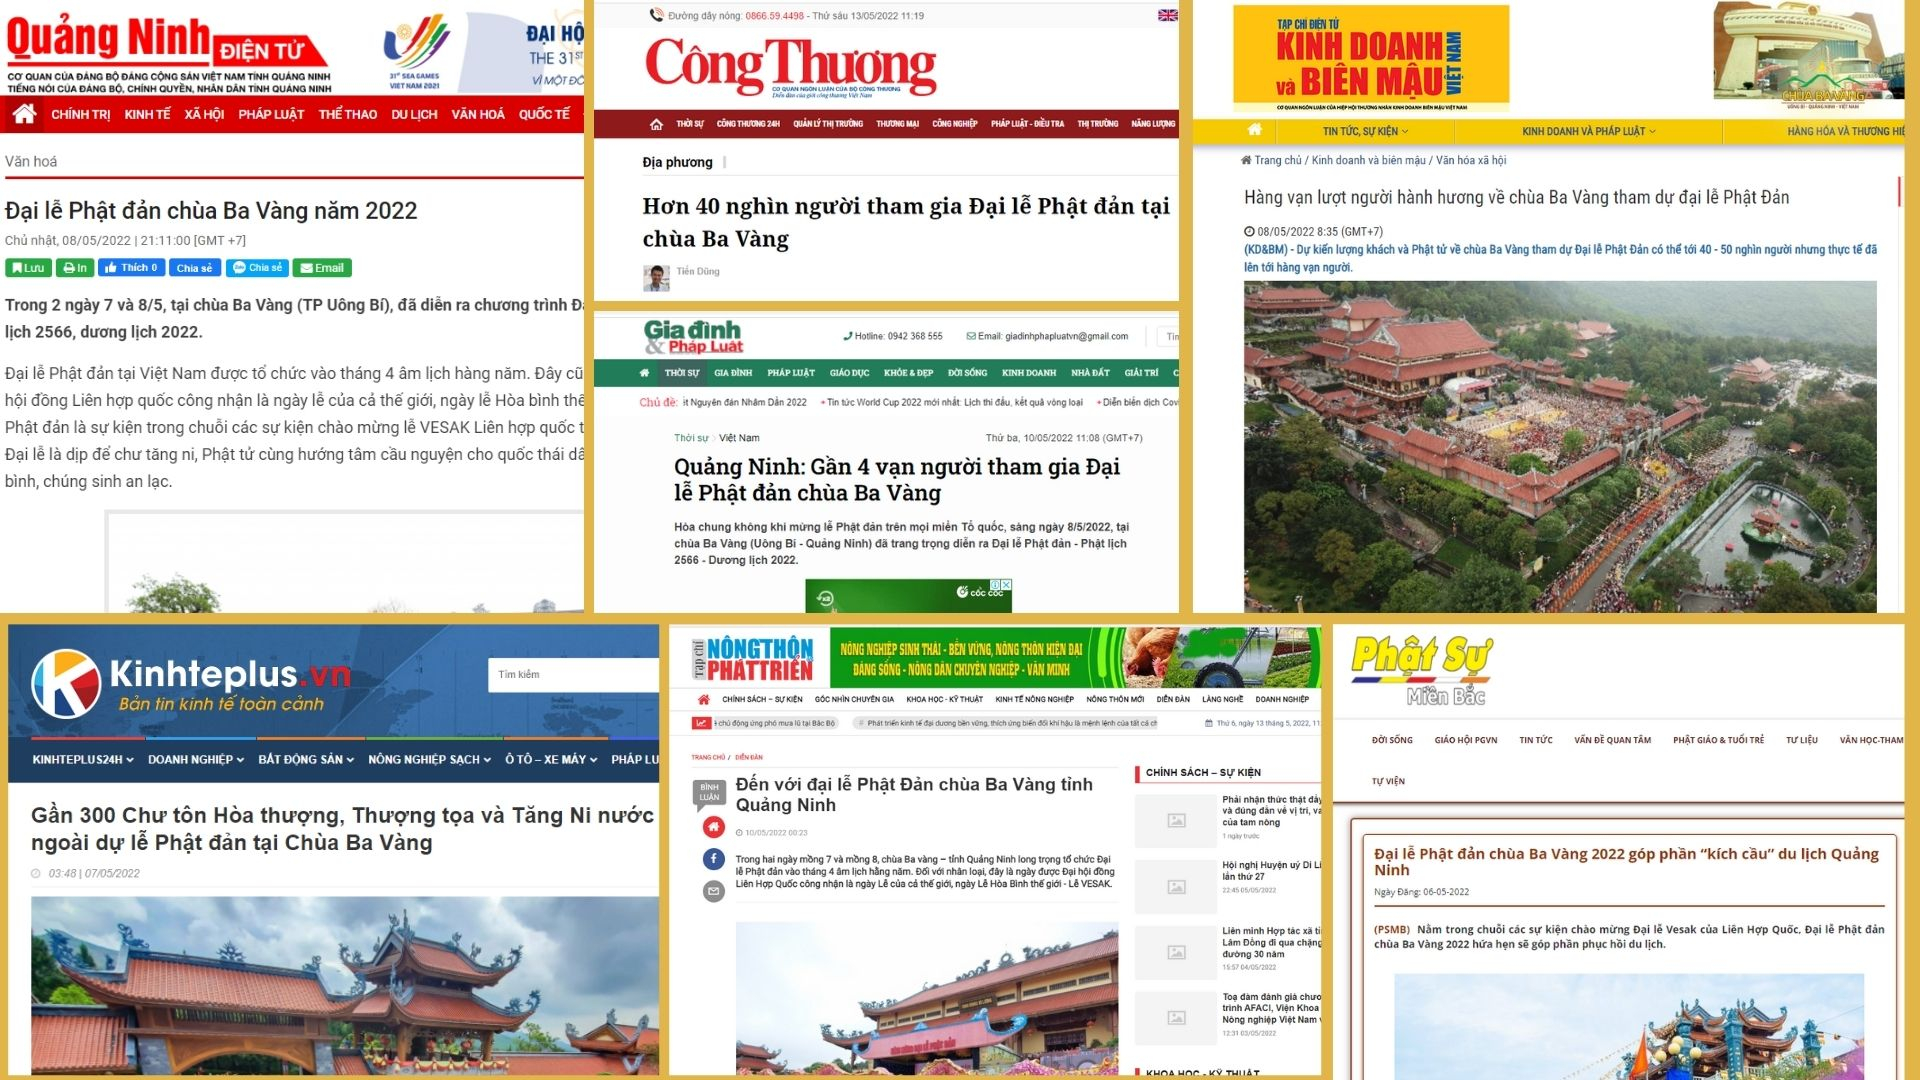 Và rất nhiều các tờ báo đưa tin về đại lễ như Báo Quảng Ninh điện tử, báo Công thương, báo Nông thôn và Phát triển, trang Phật sự online,...  